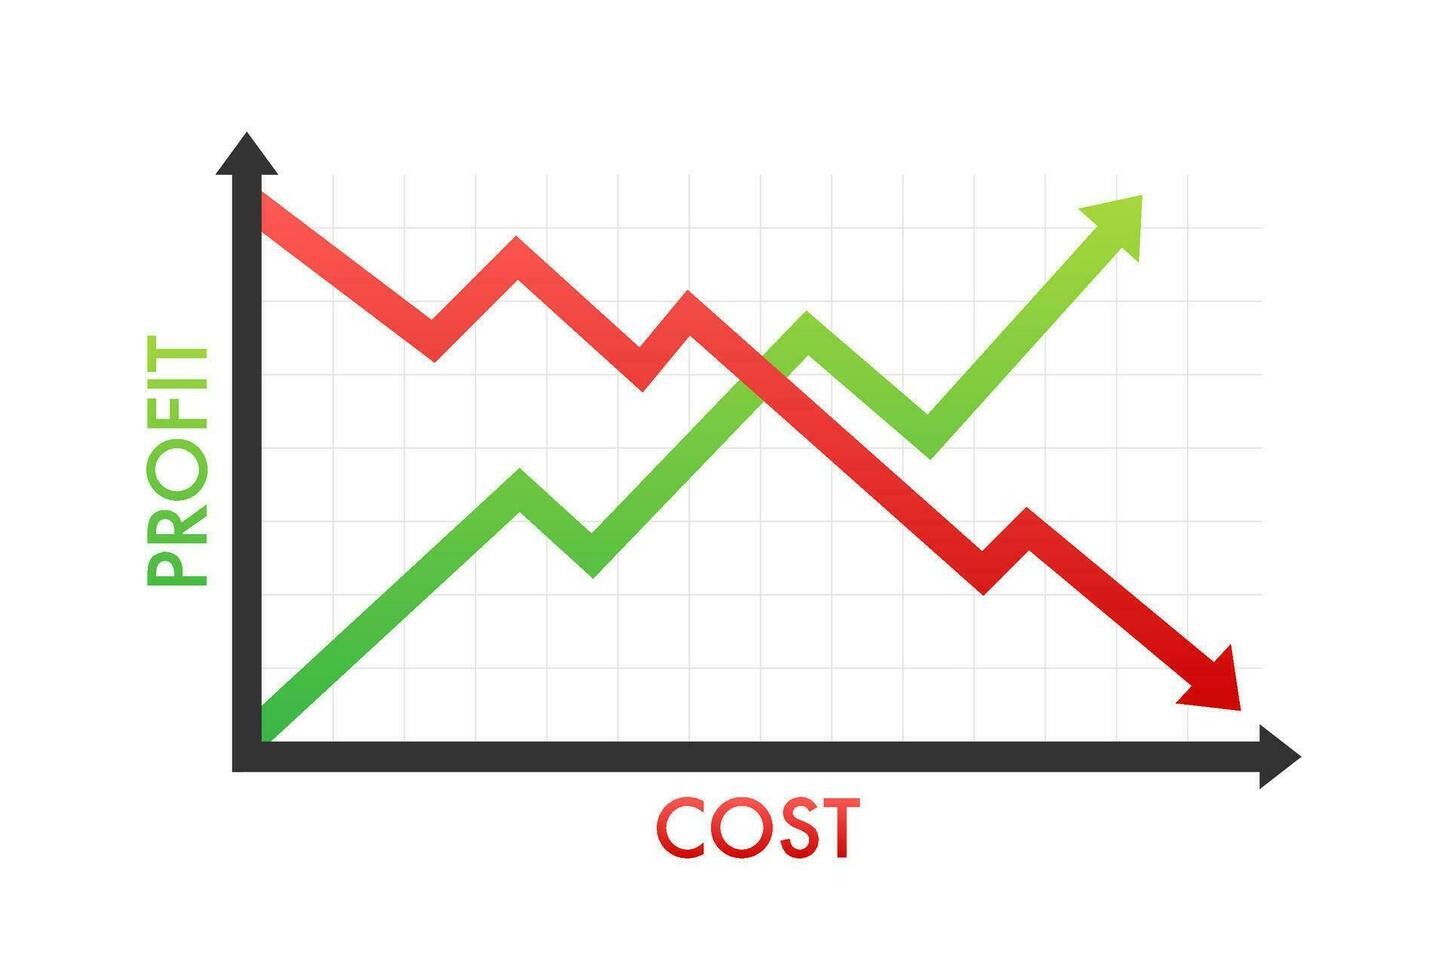 grafer kosta mot vinst. kostar minskning. vektor stock illustration